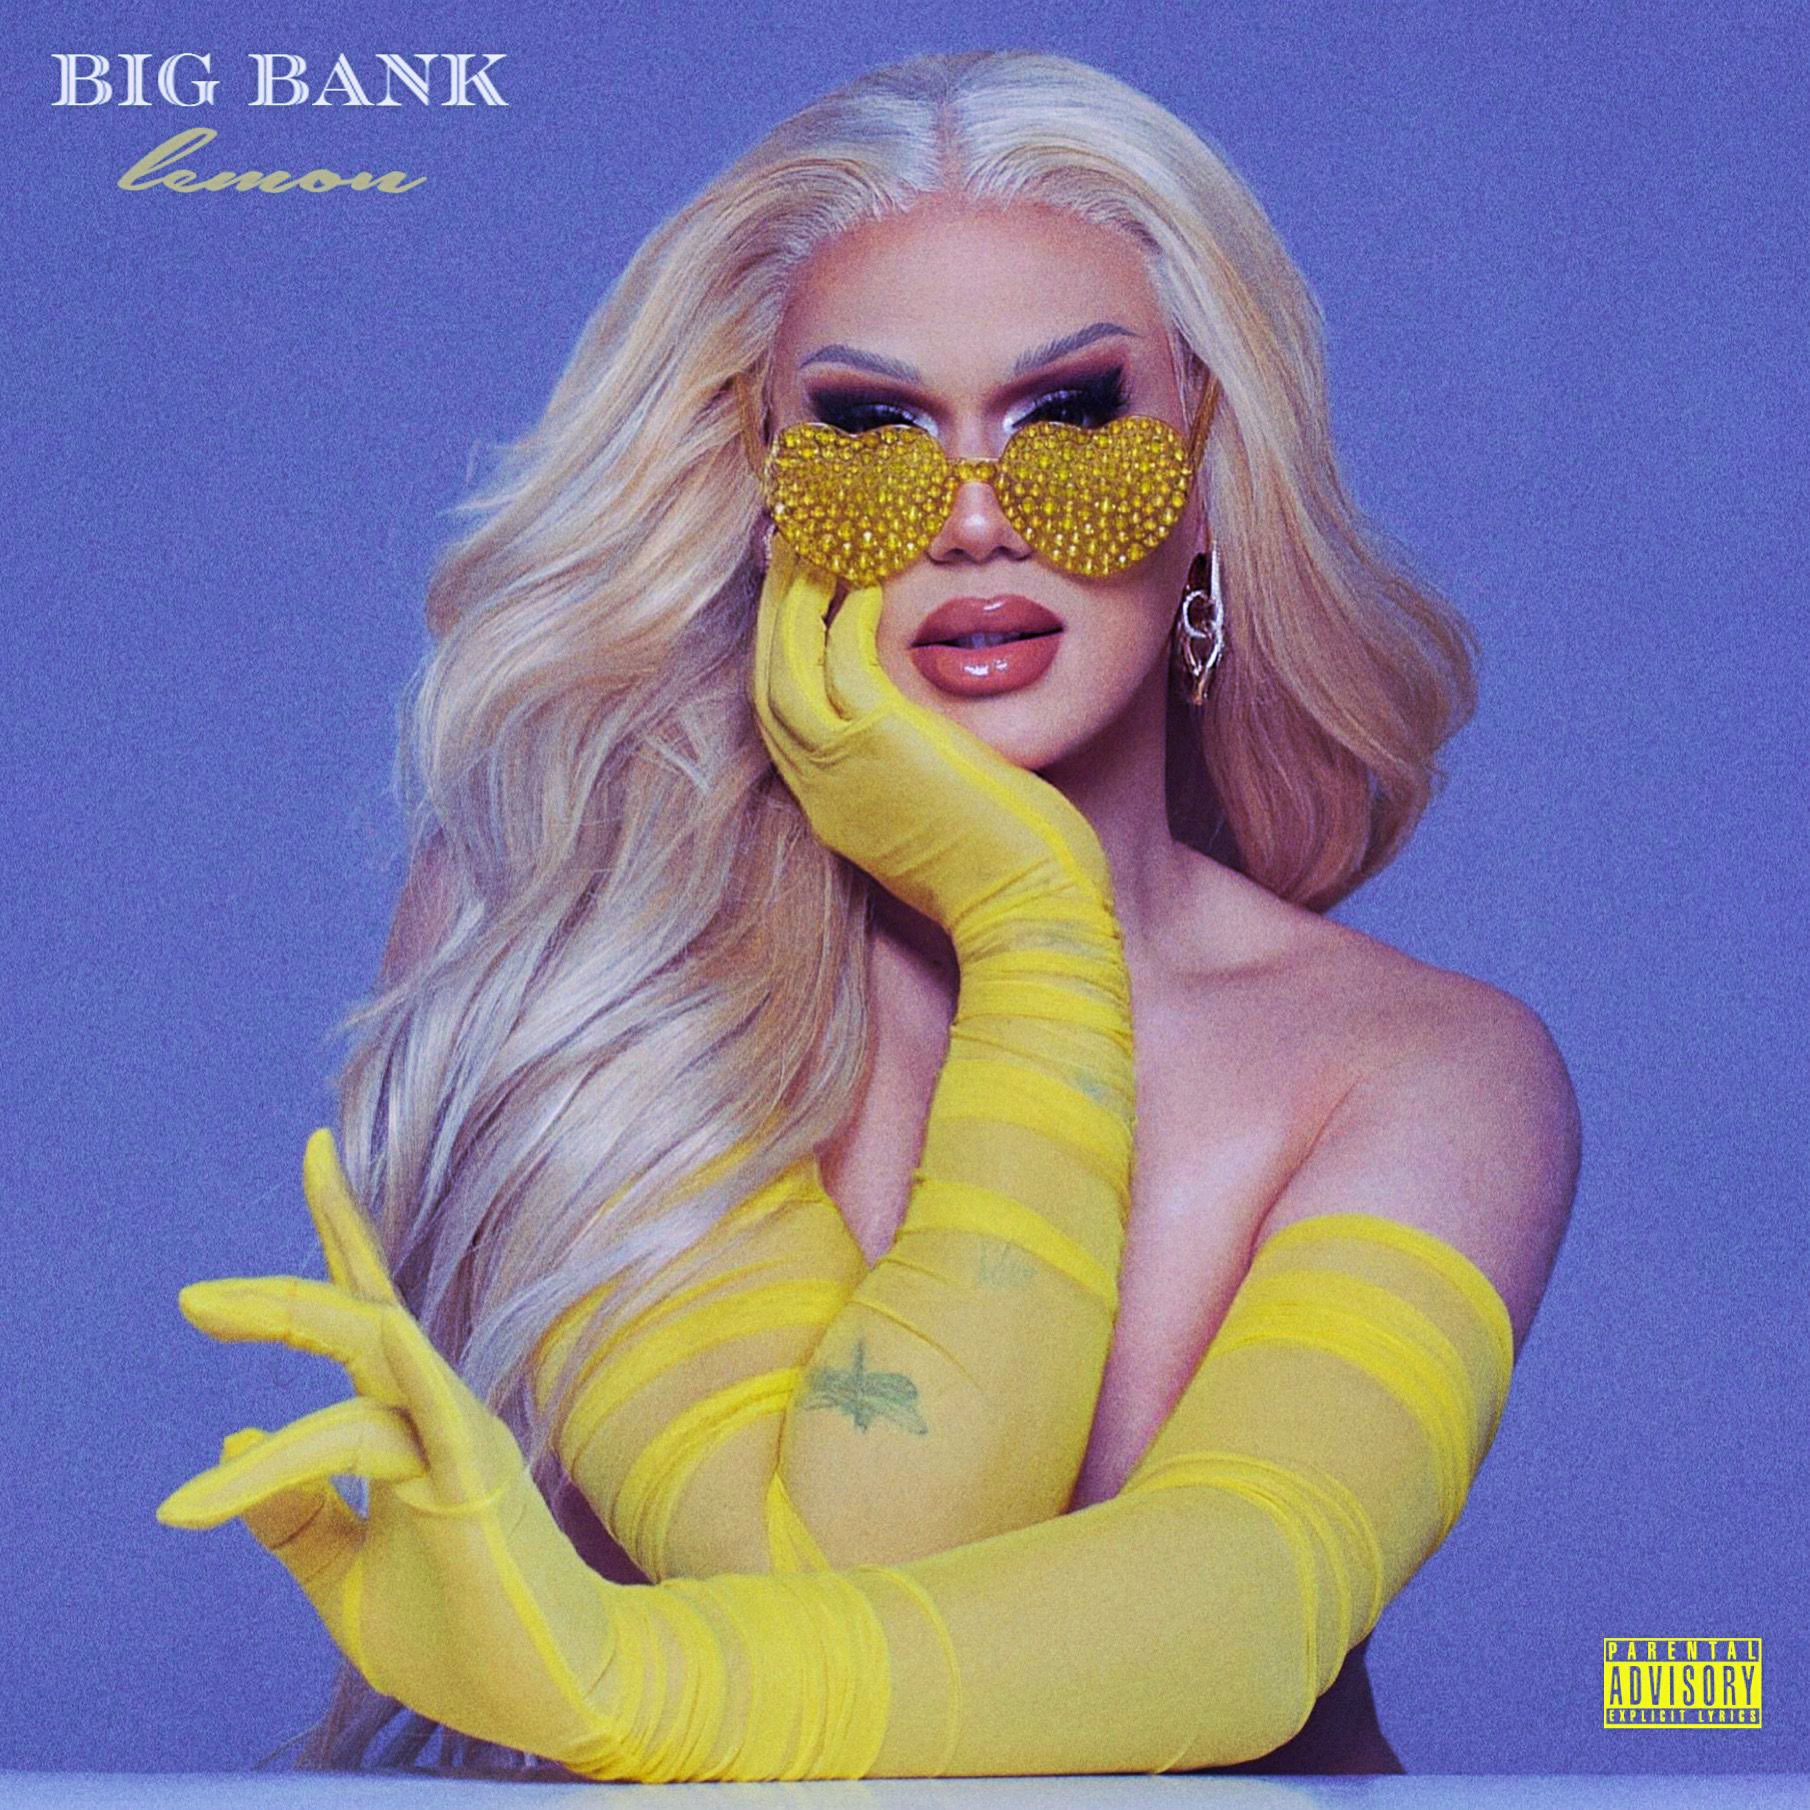 Lemon Big Bank cover artwork